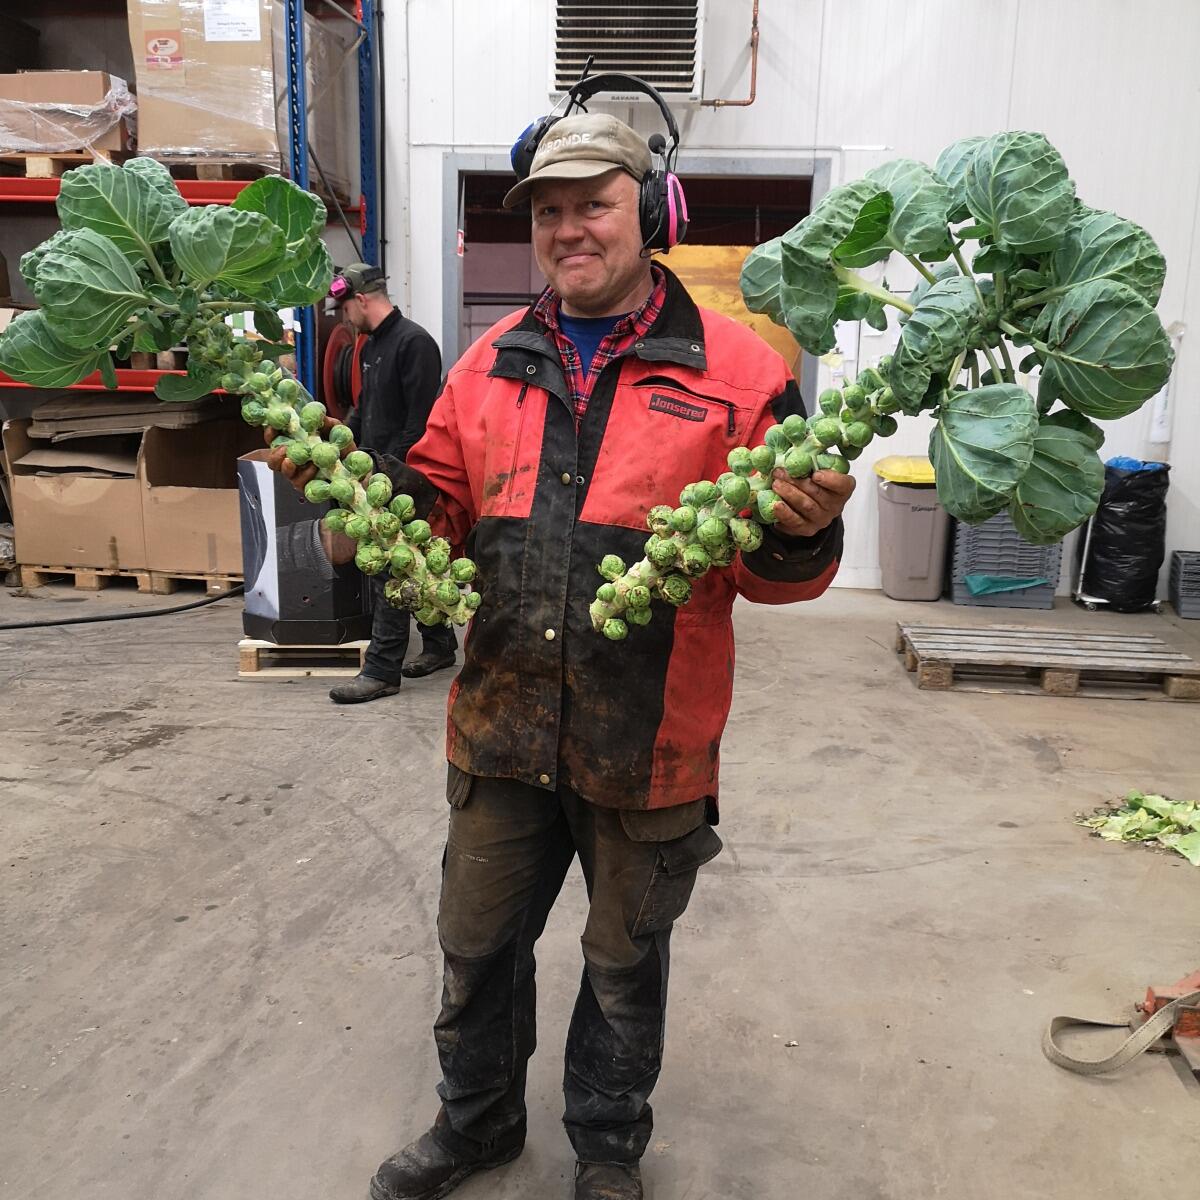 Källsprångs Gård's Brussels sprouts stock'